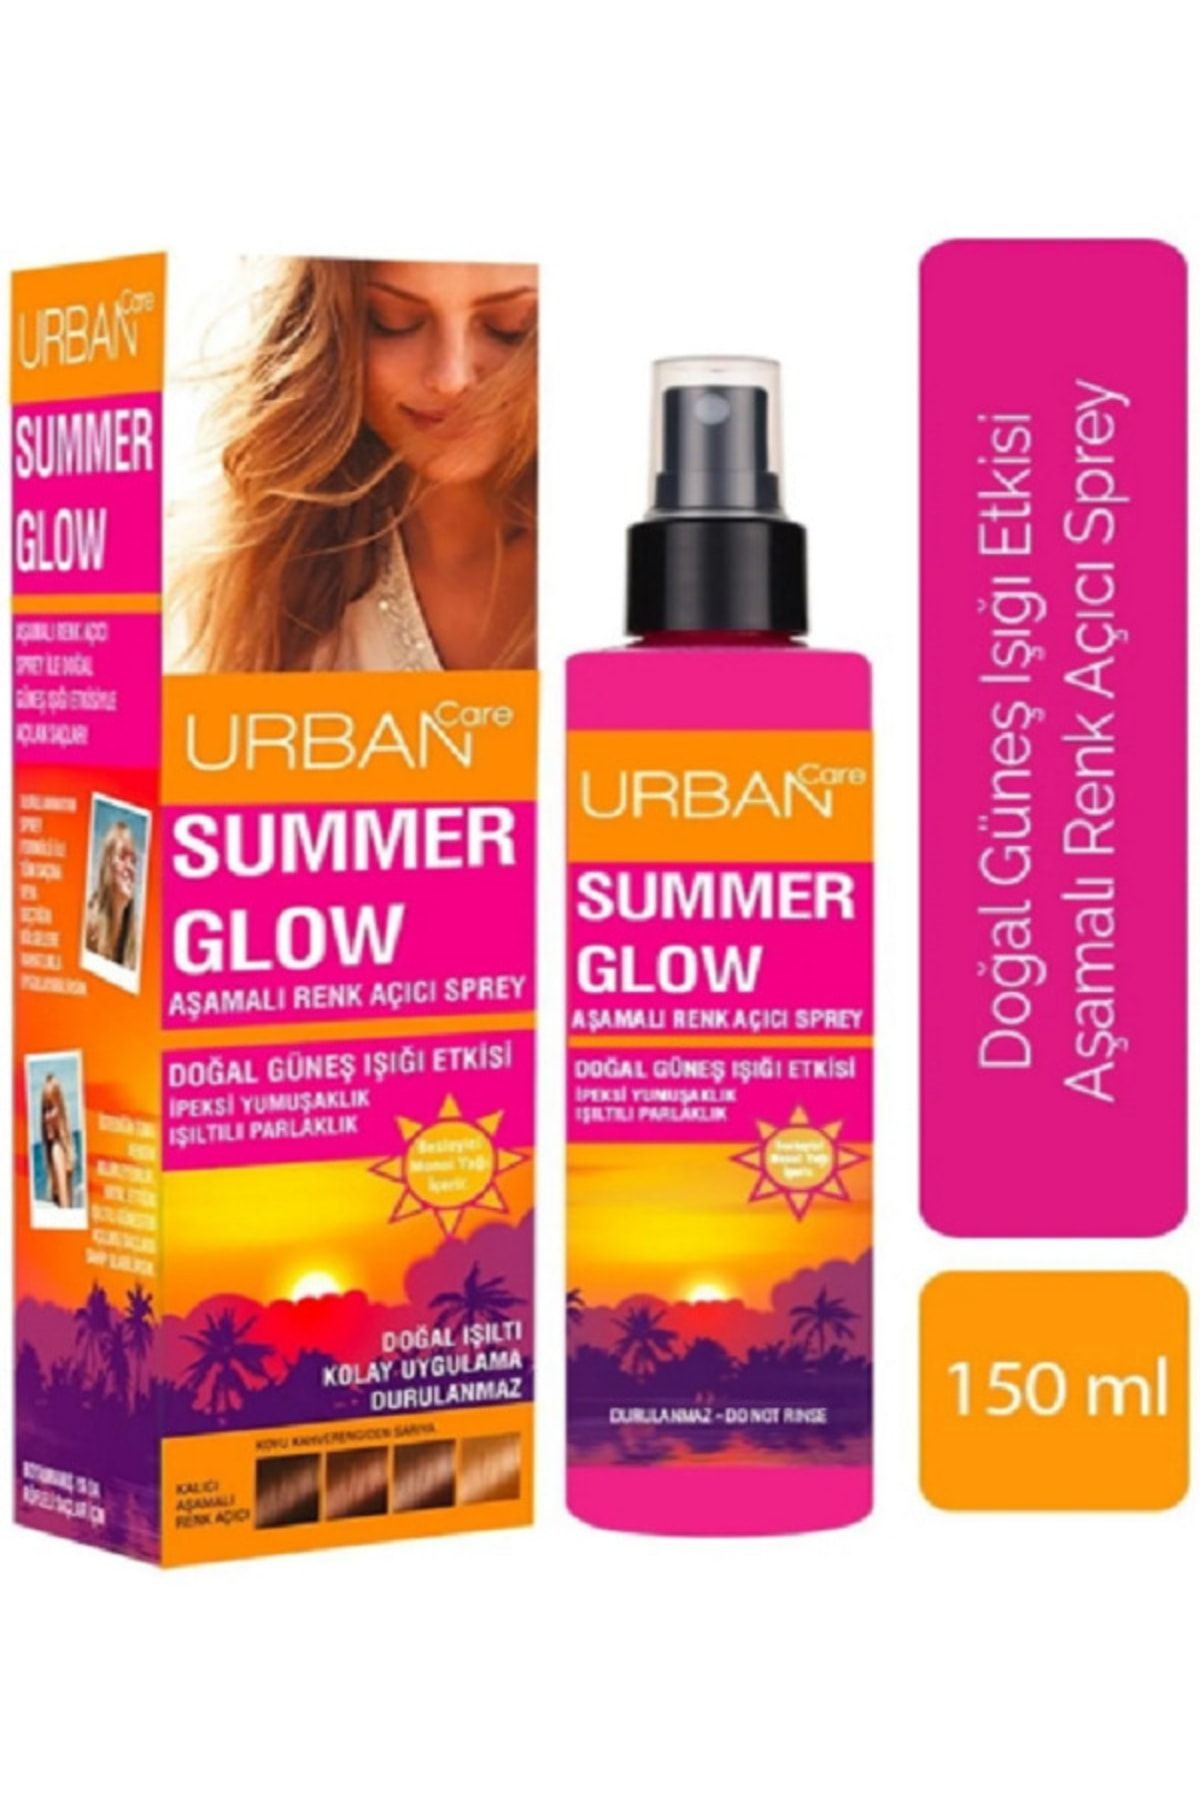 Urban Care Summer Glow Aşamalı Renk Açıcı Süper Sprey 150 Ml _urban-sprey-002